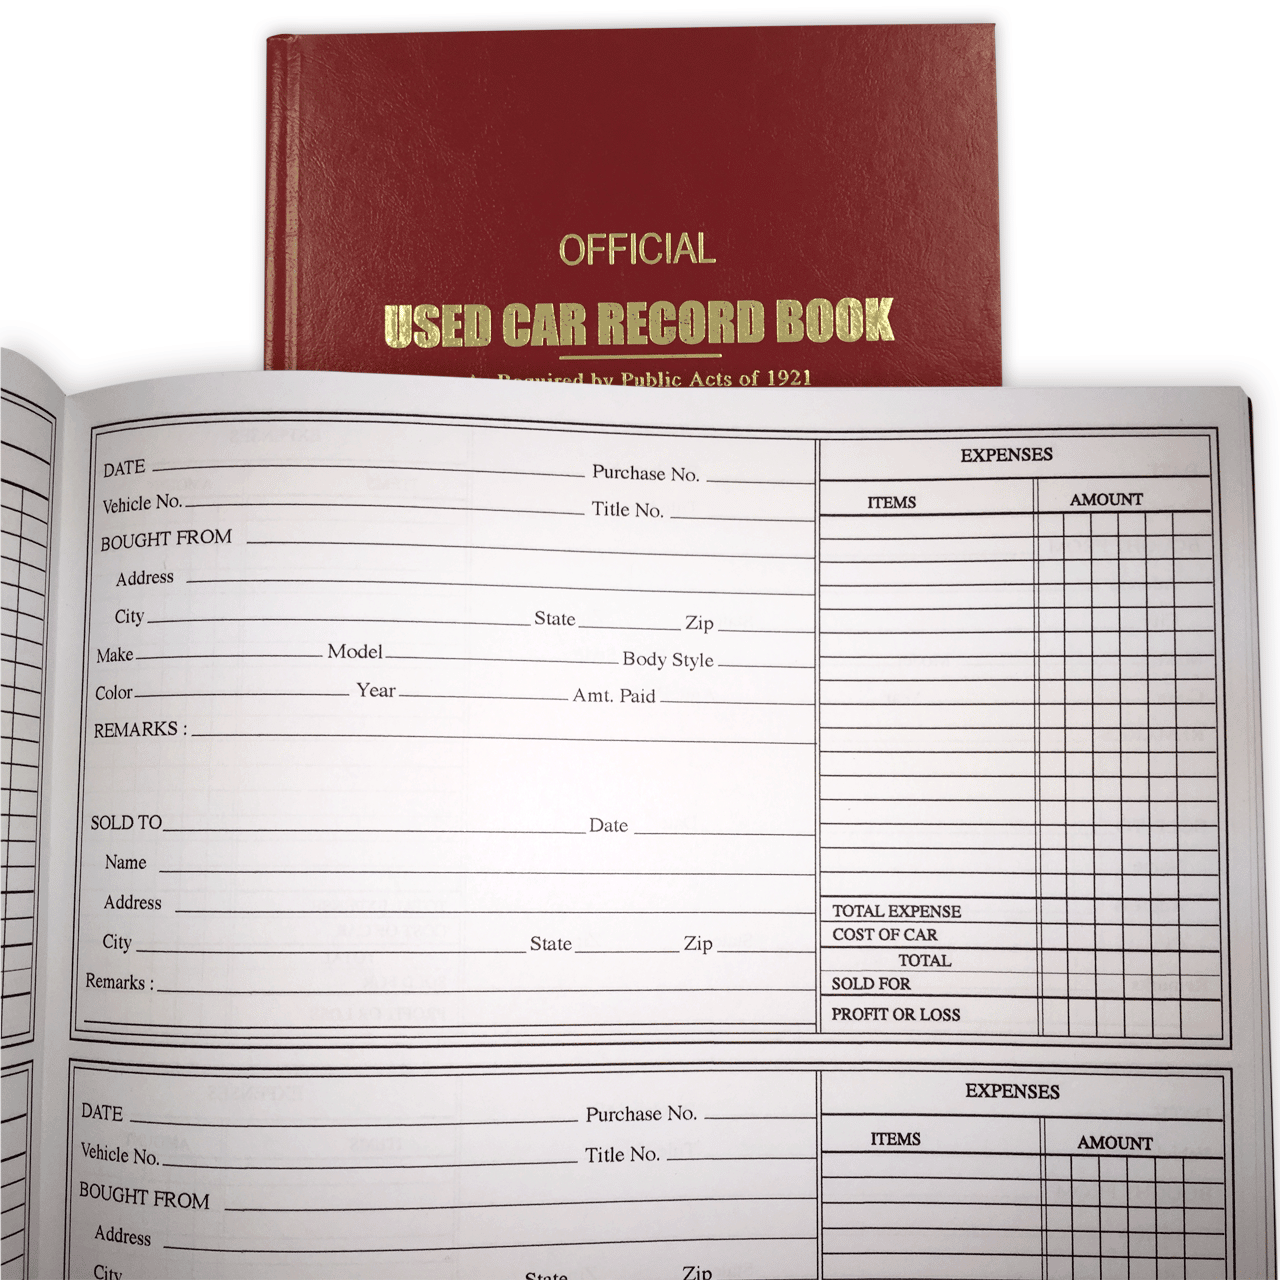 Police Record Book